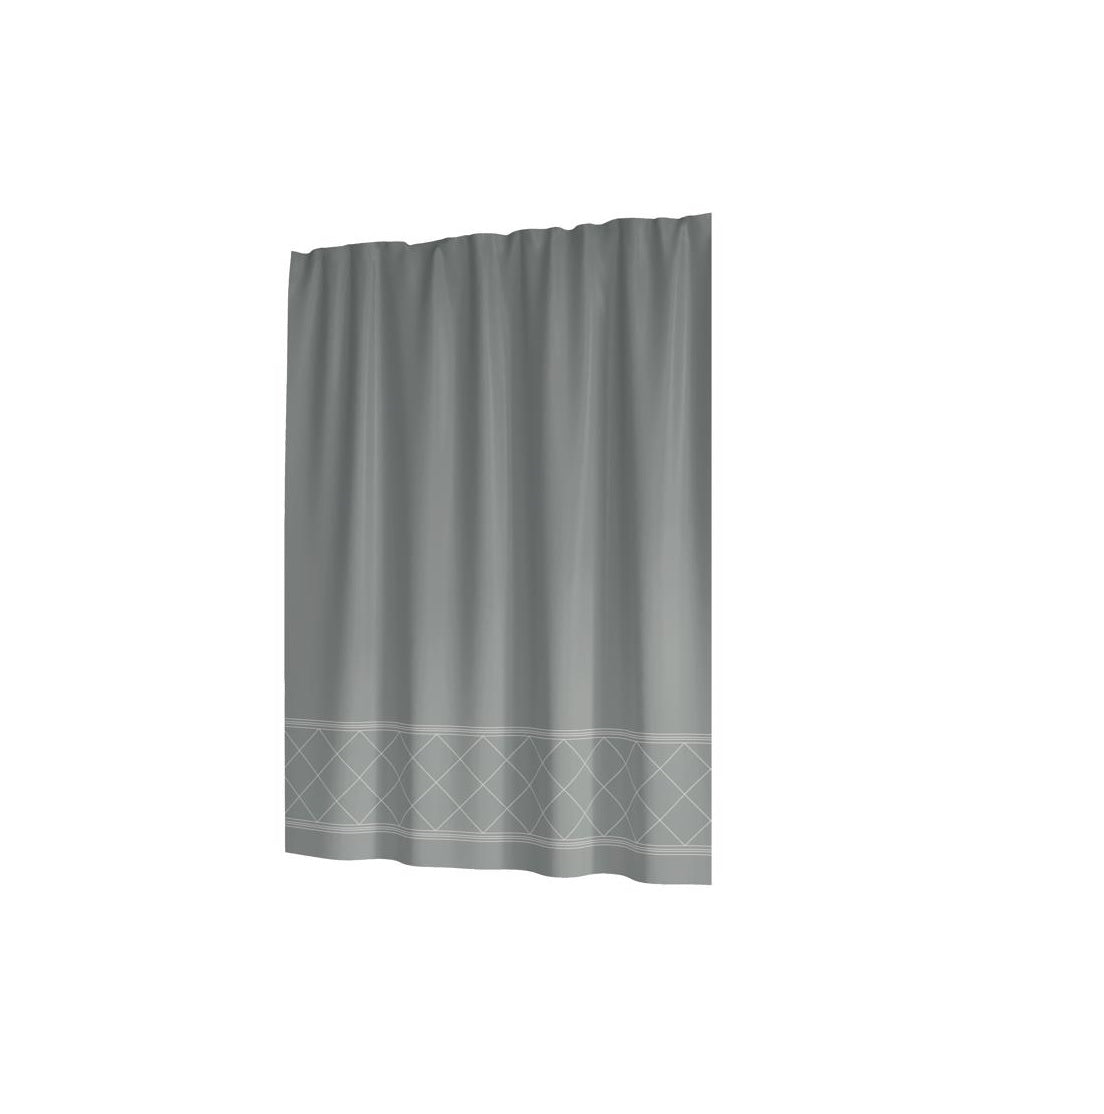 Sttelli DAS-115-TEA Dandelion Shower Curtain, Polyester